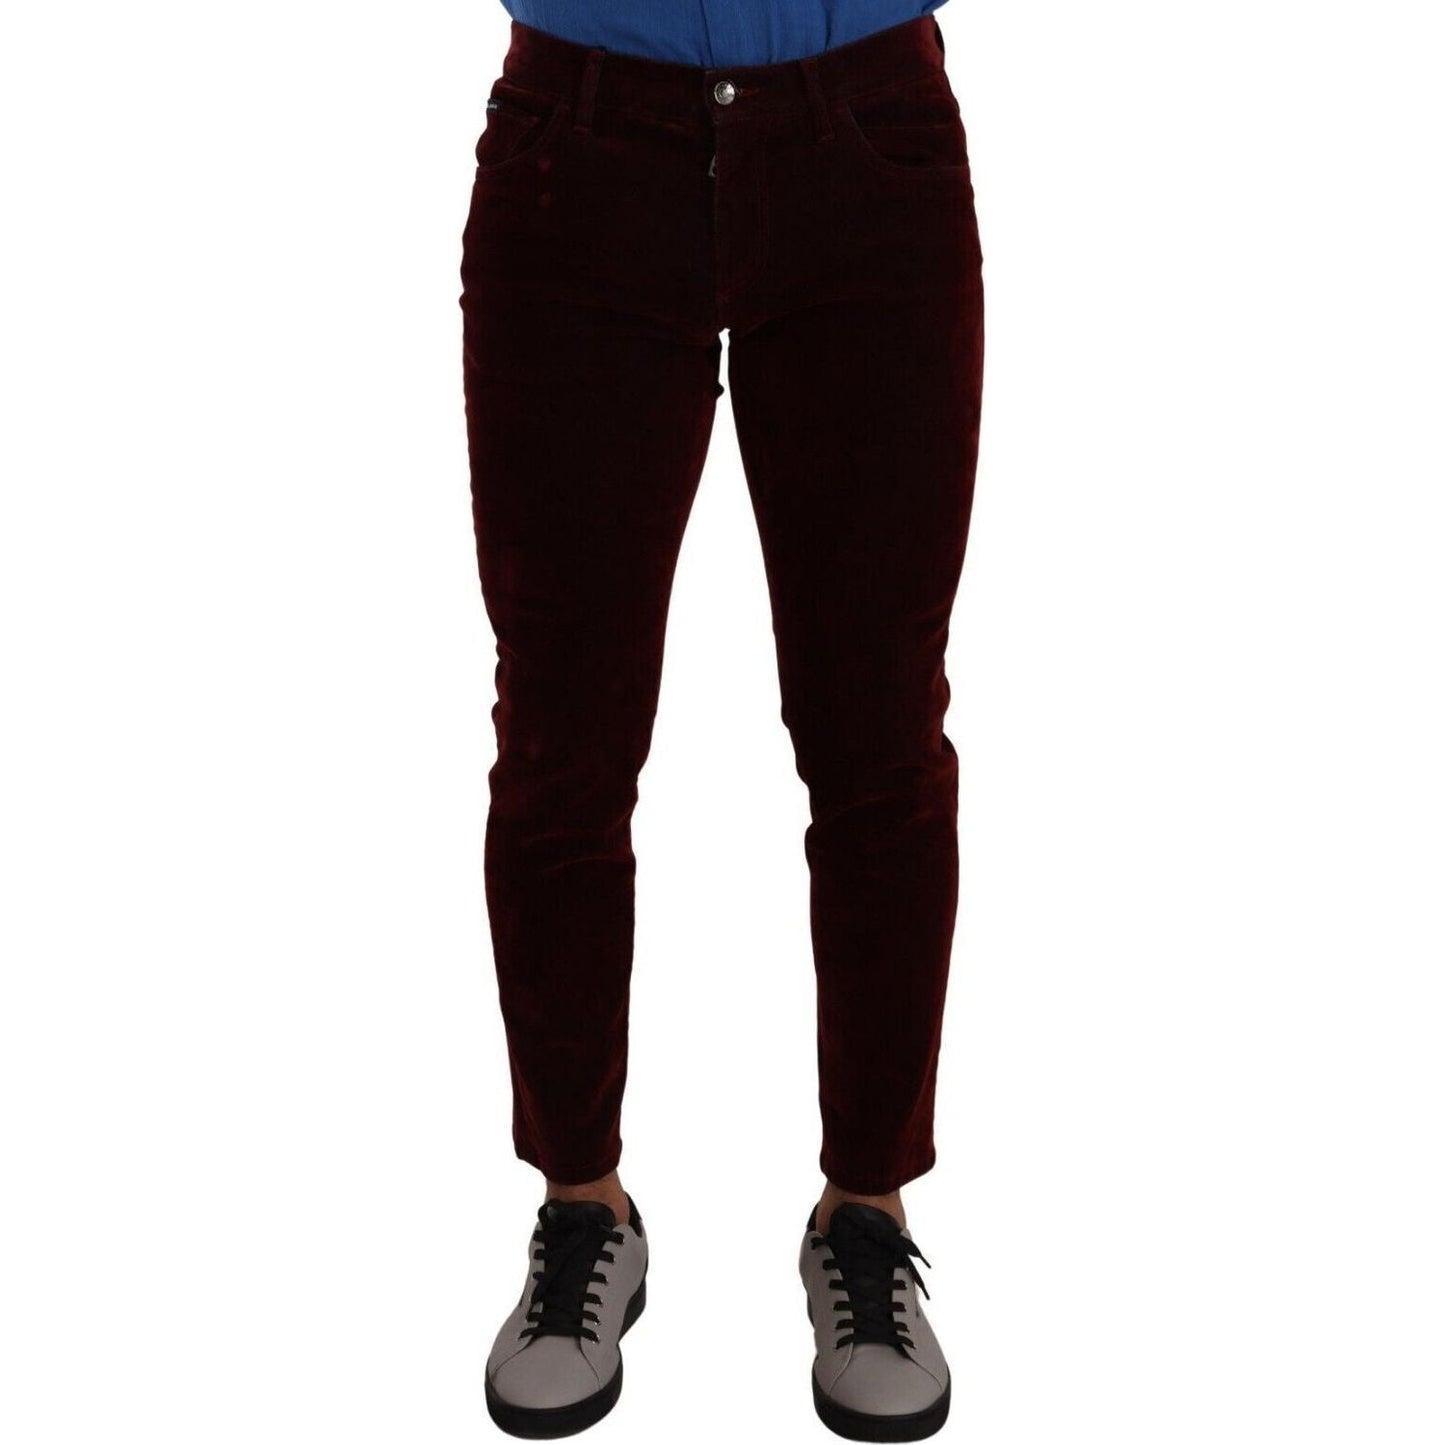 Dolce & Gabbana Bordeaux Slim Fit Skinny Jeans dark-red-cotton-velvet-skinny-men-denim-jeans s-l1600-169-37d179fa-497.jpg